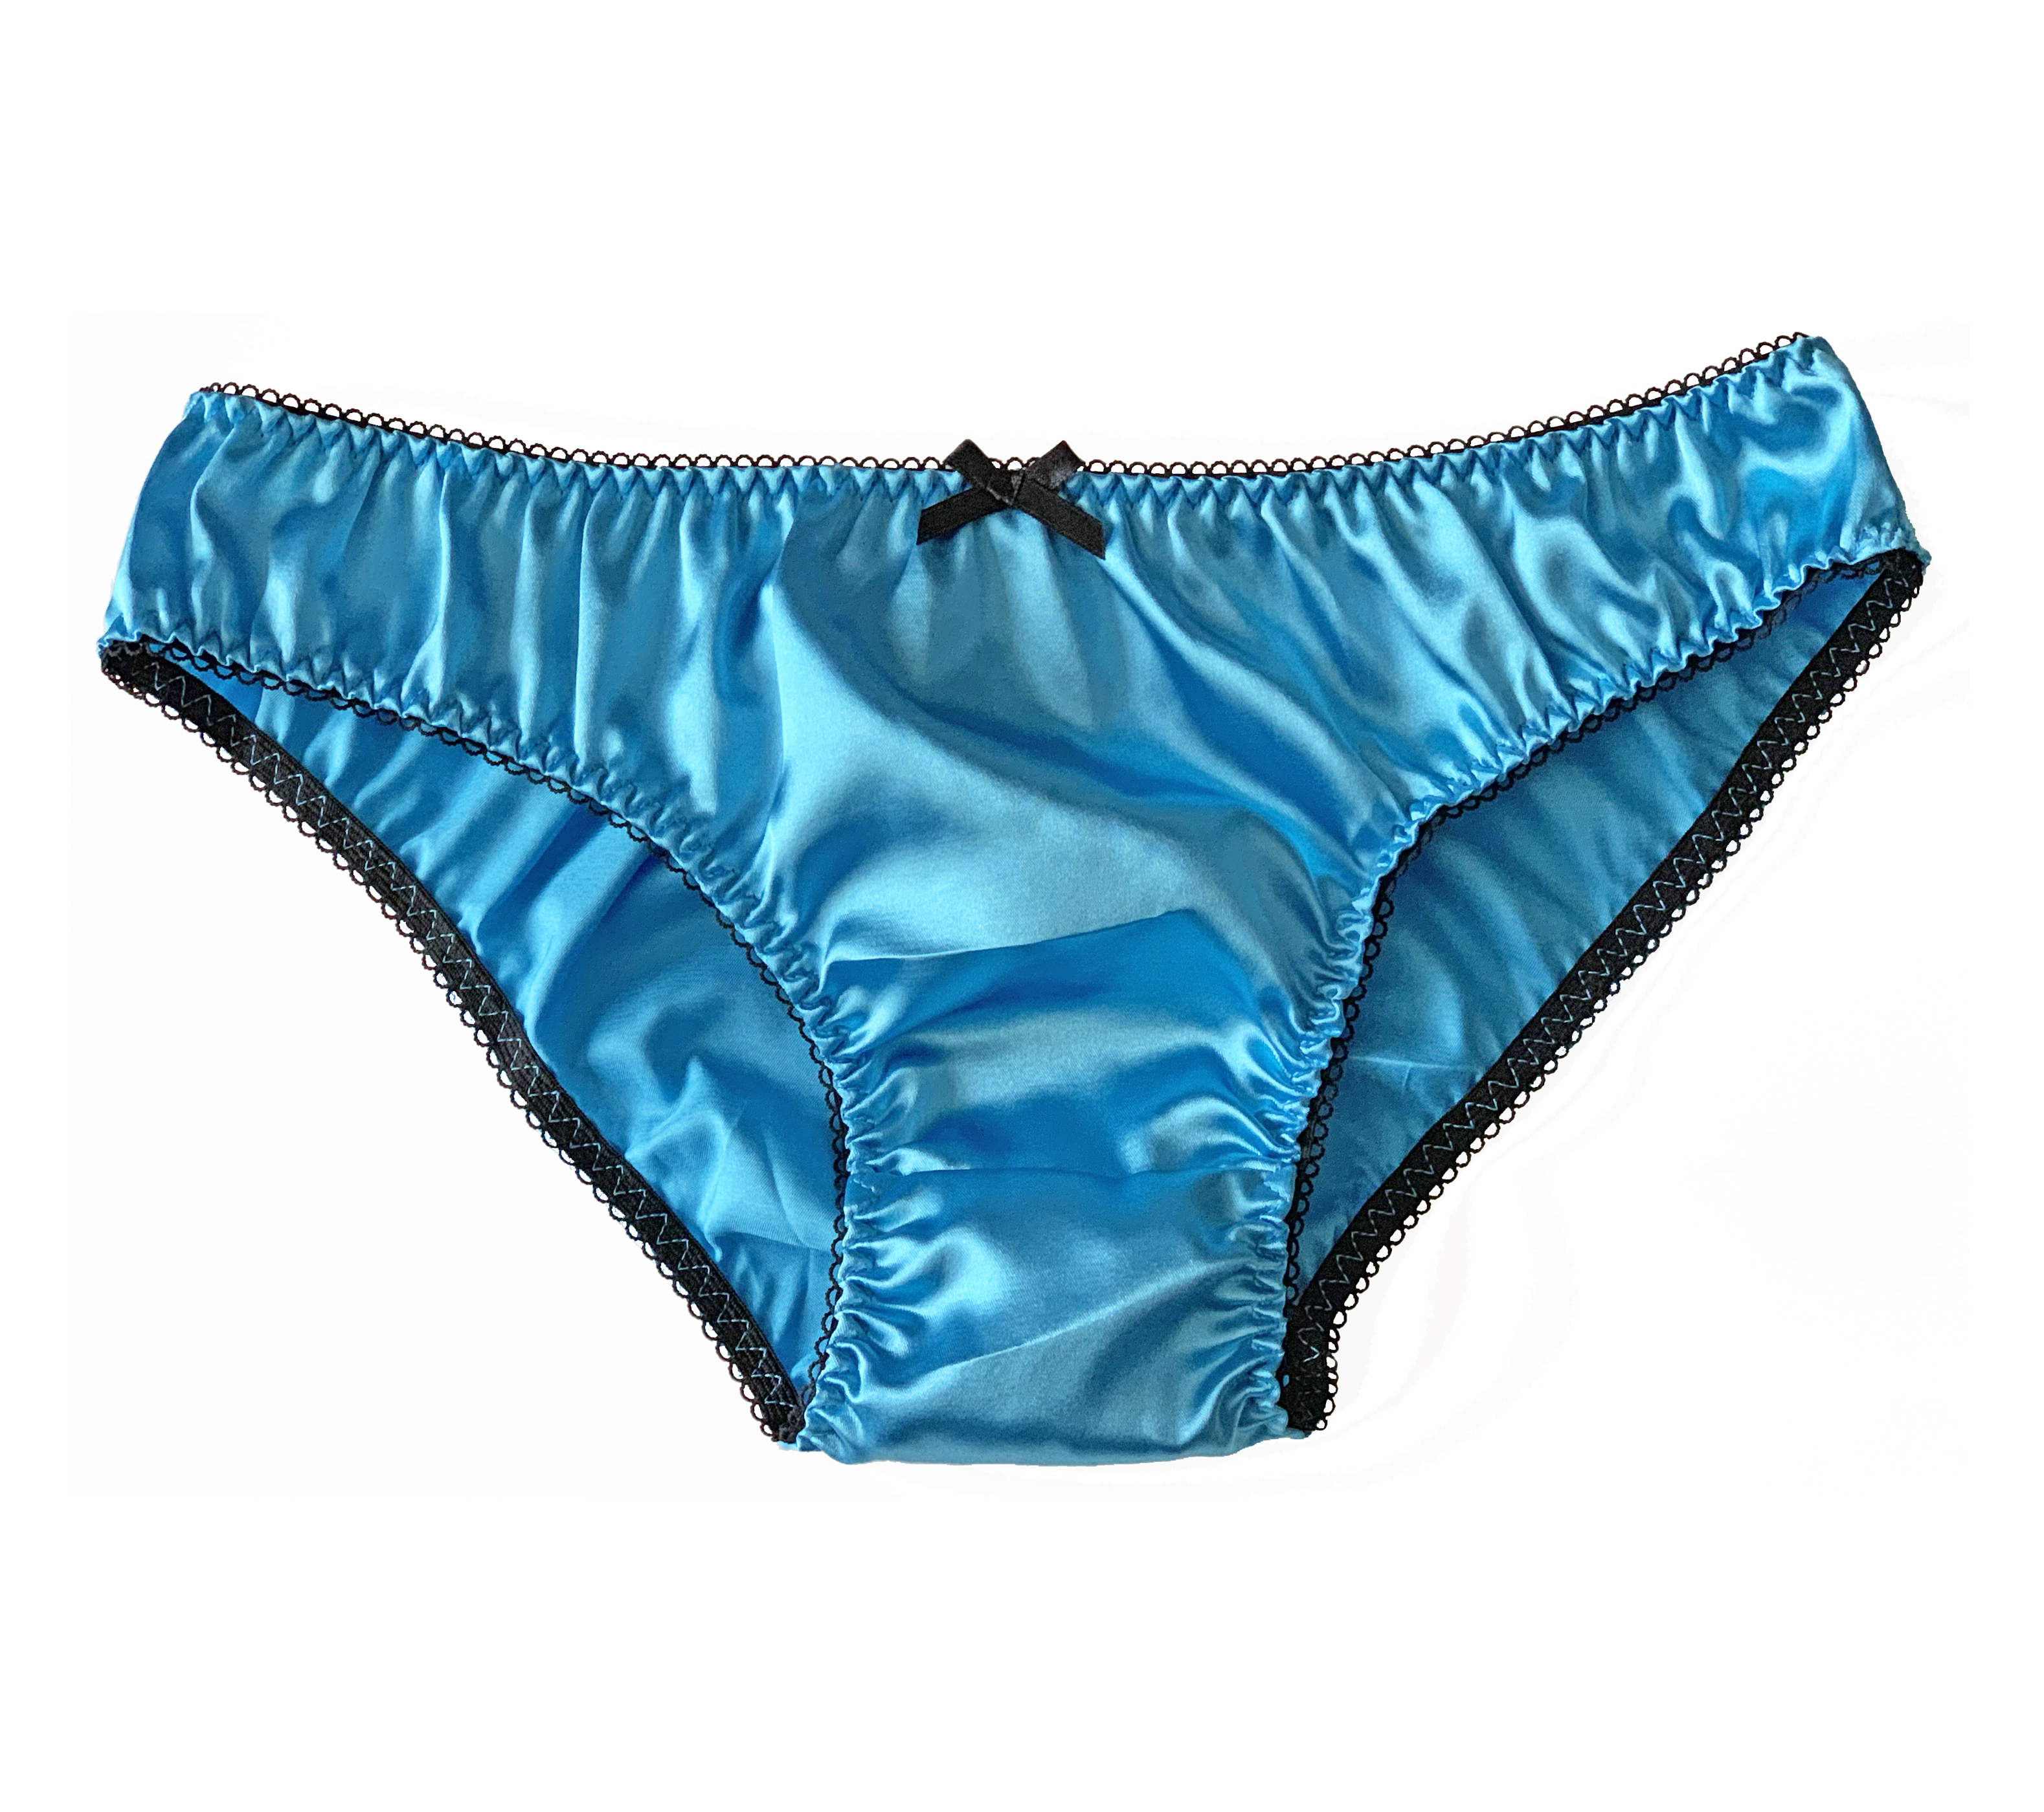 Aqua Blue Satin Frilly Sissy Panties Bikini Knicker Underwear Briefs Size 10 20 Ebay